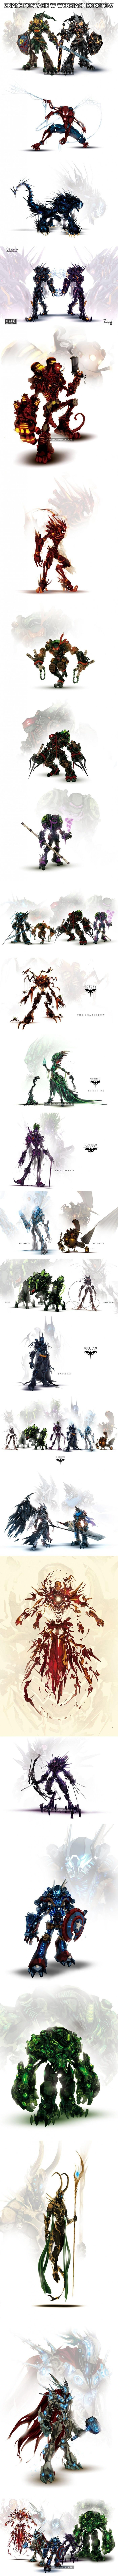 Znane postacie w wersjach robotów